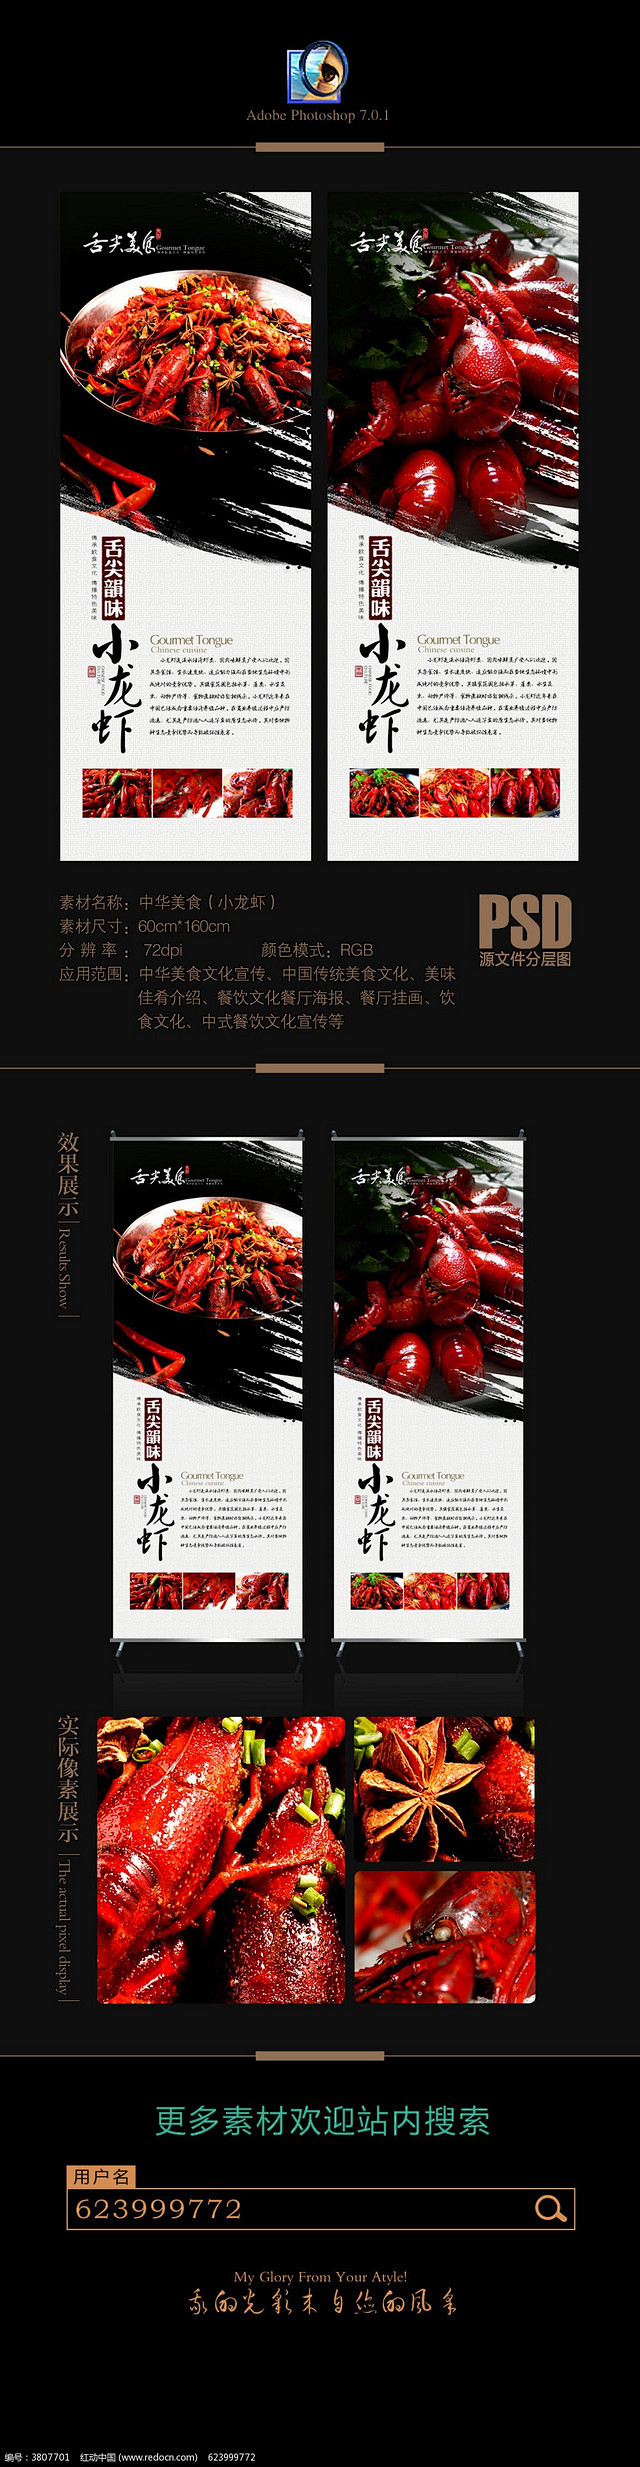 中国美食小龙虾文化X展架宣传图片